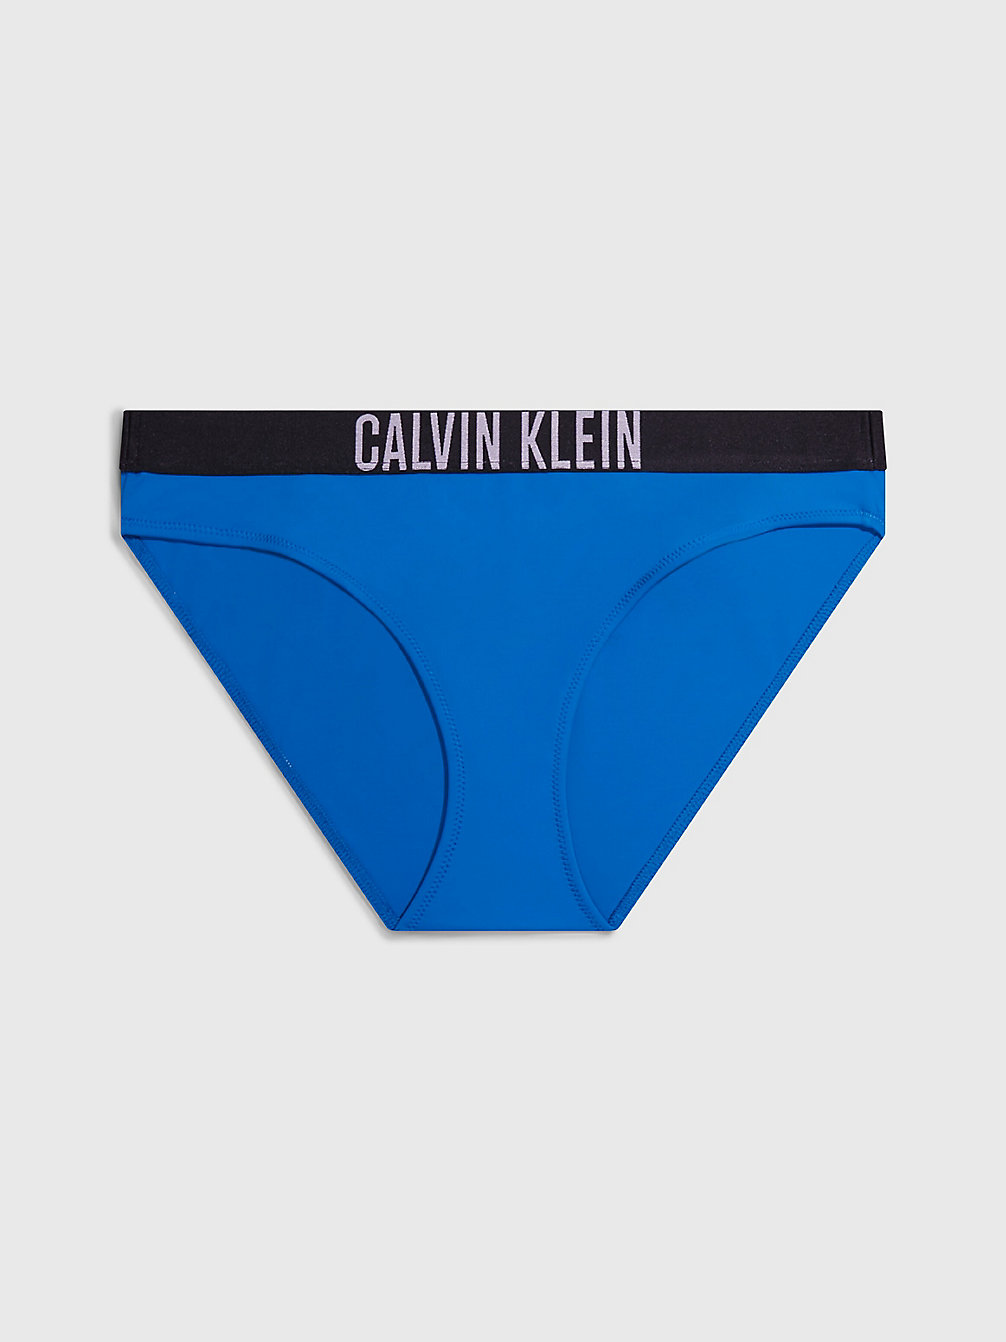 DYNAMIC BLUE > Bikini Bottoms - Intense Power > undefined Женщины - Calvin Klein